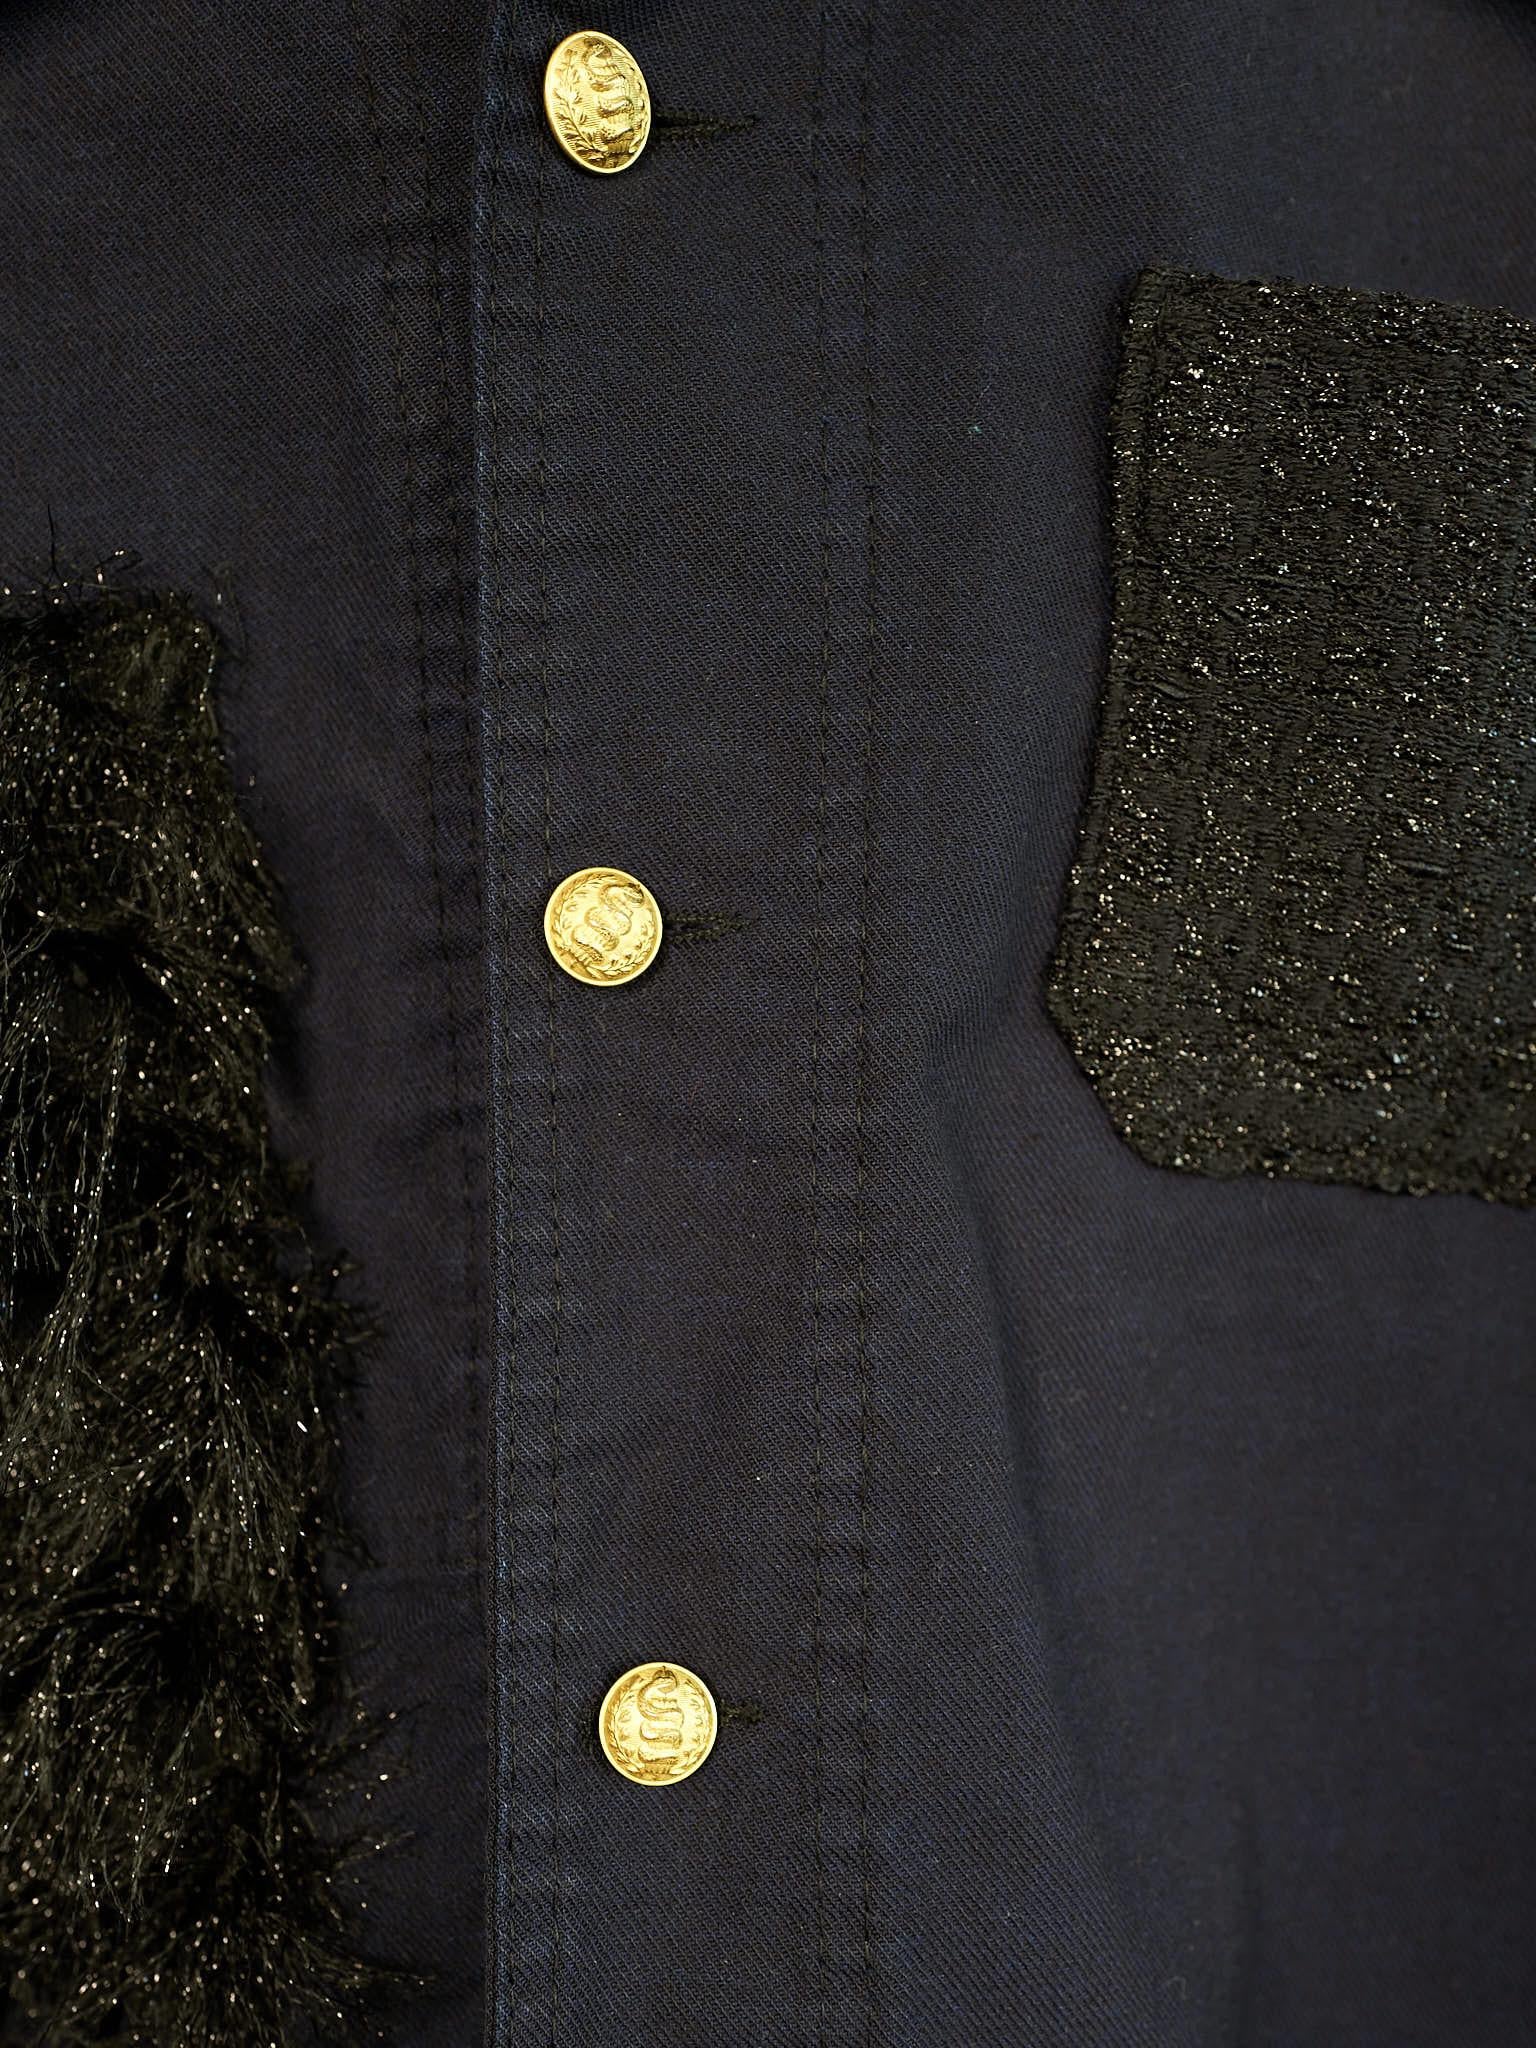 Black Tweed Jacket Original French Work Wear Vintage J Dauphin